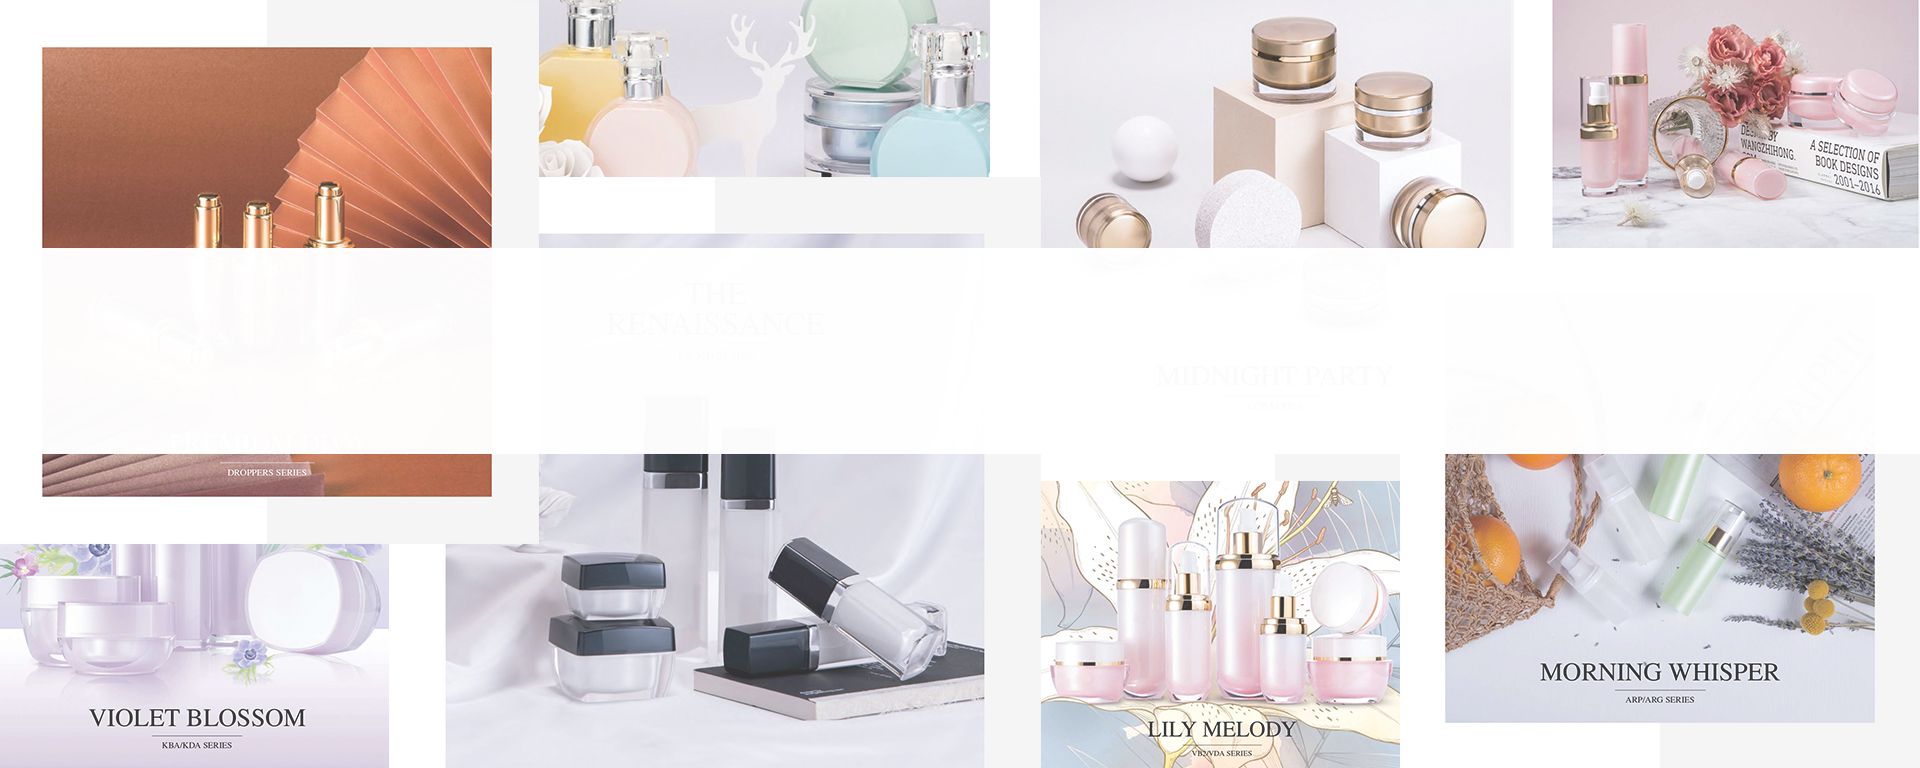 Beauty Packaging Series Luxury, Elegant, High-End